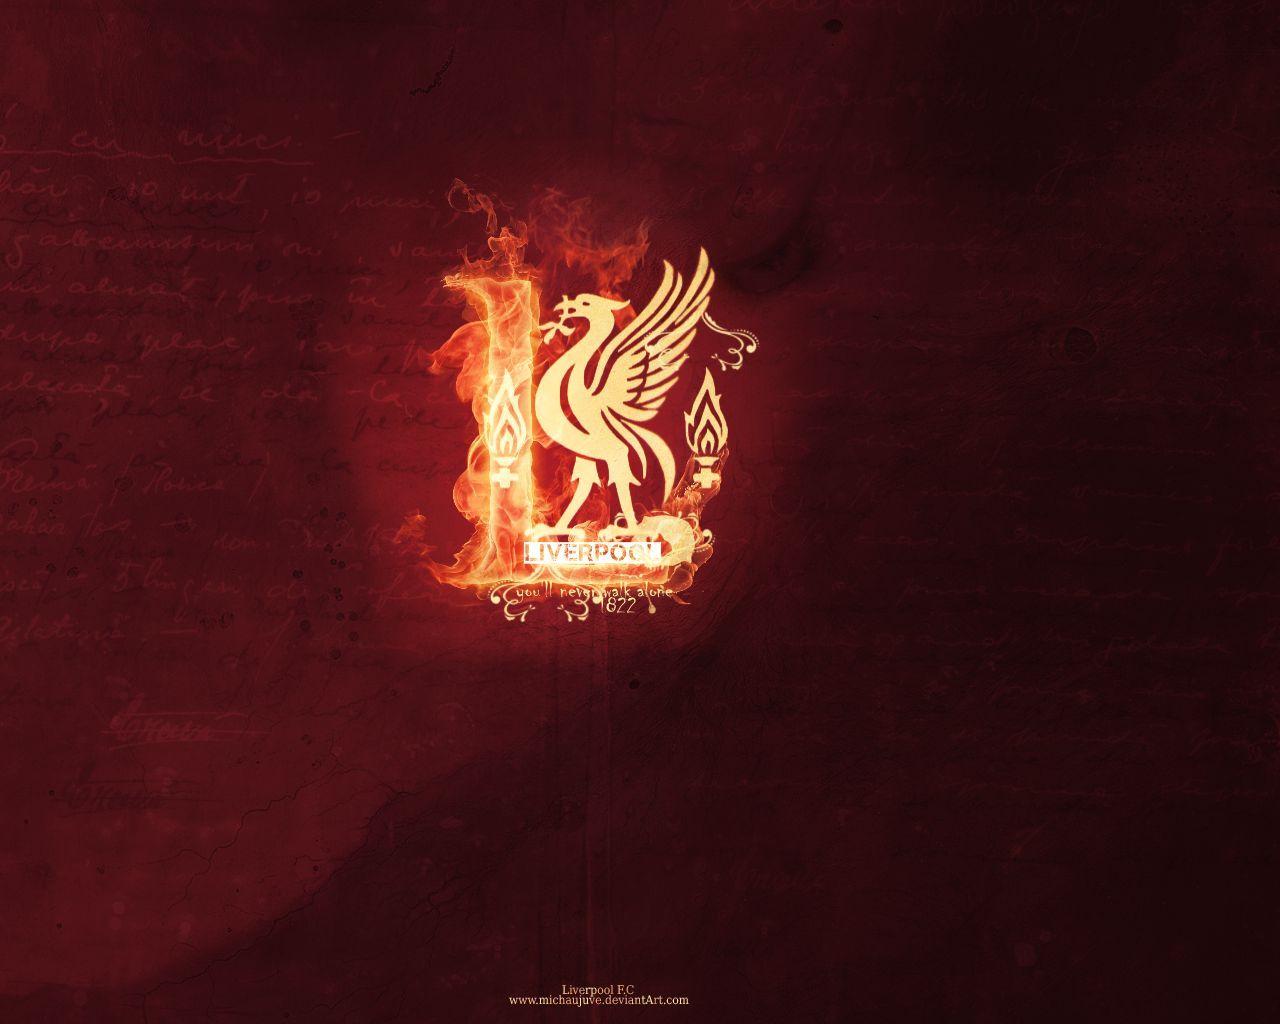 Liverpool FC Wallpaper 3840×2160